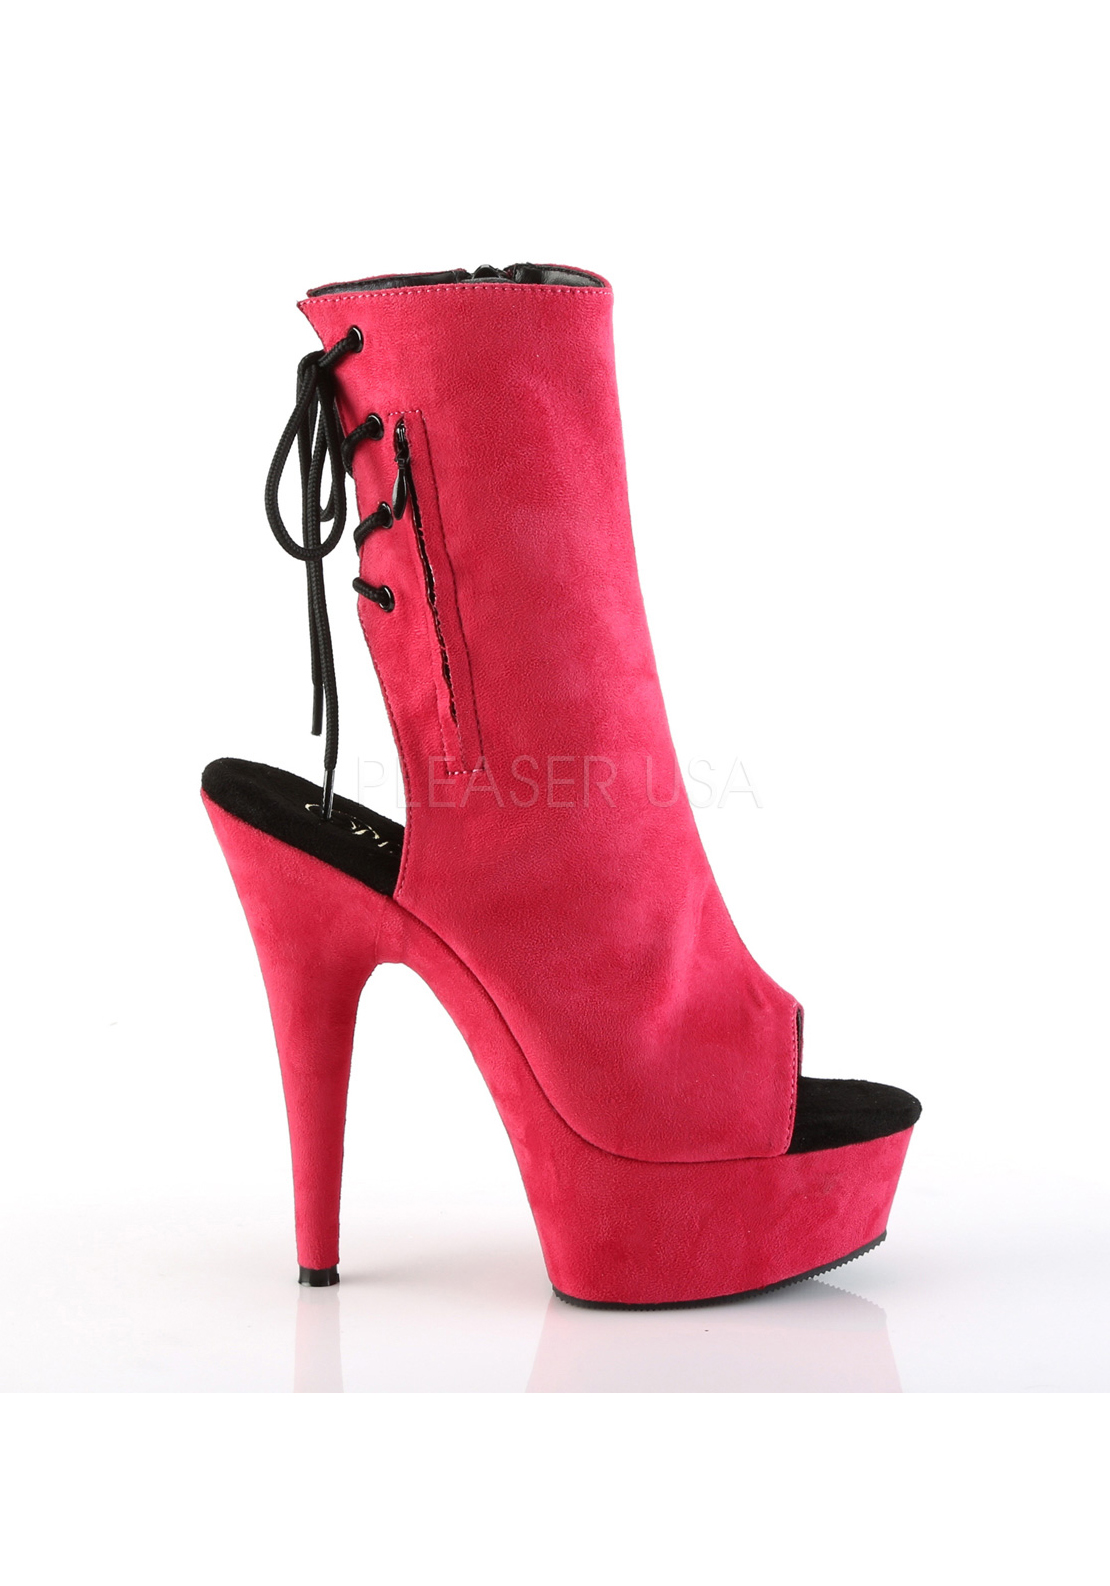 1 3/4 Inch Platform Open Toe/Heel Ankle Boot Details about   Pleaser 6 Inch Heel Side Zip 